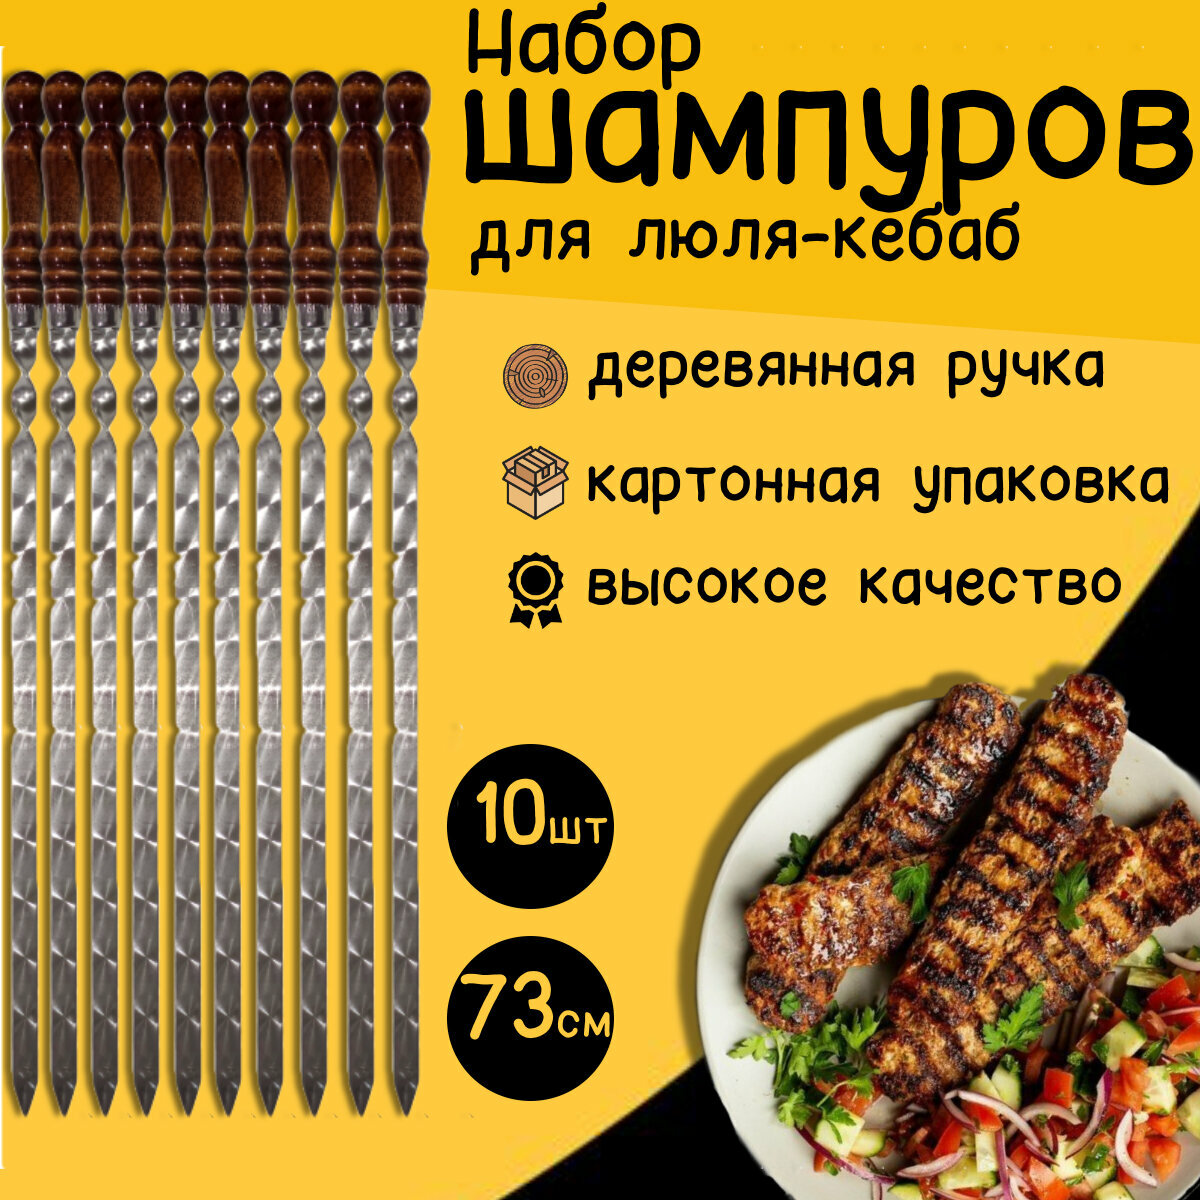 Шампура для люля-кебаб с деревянной ручкой 73 см 10 штук